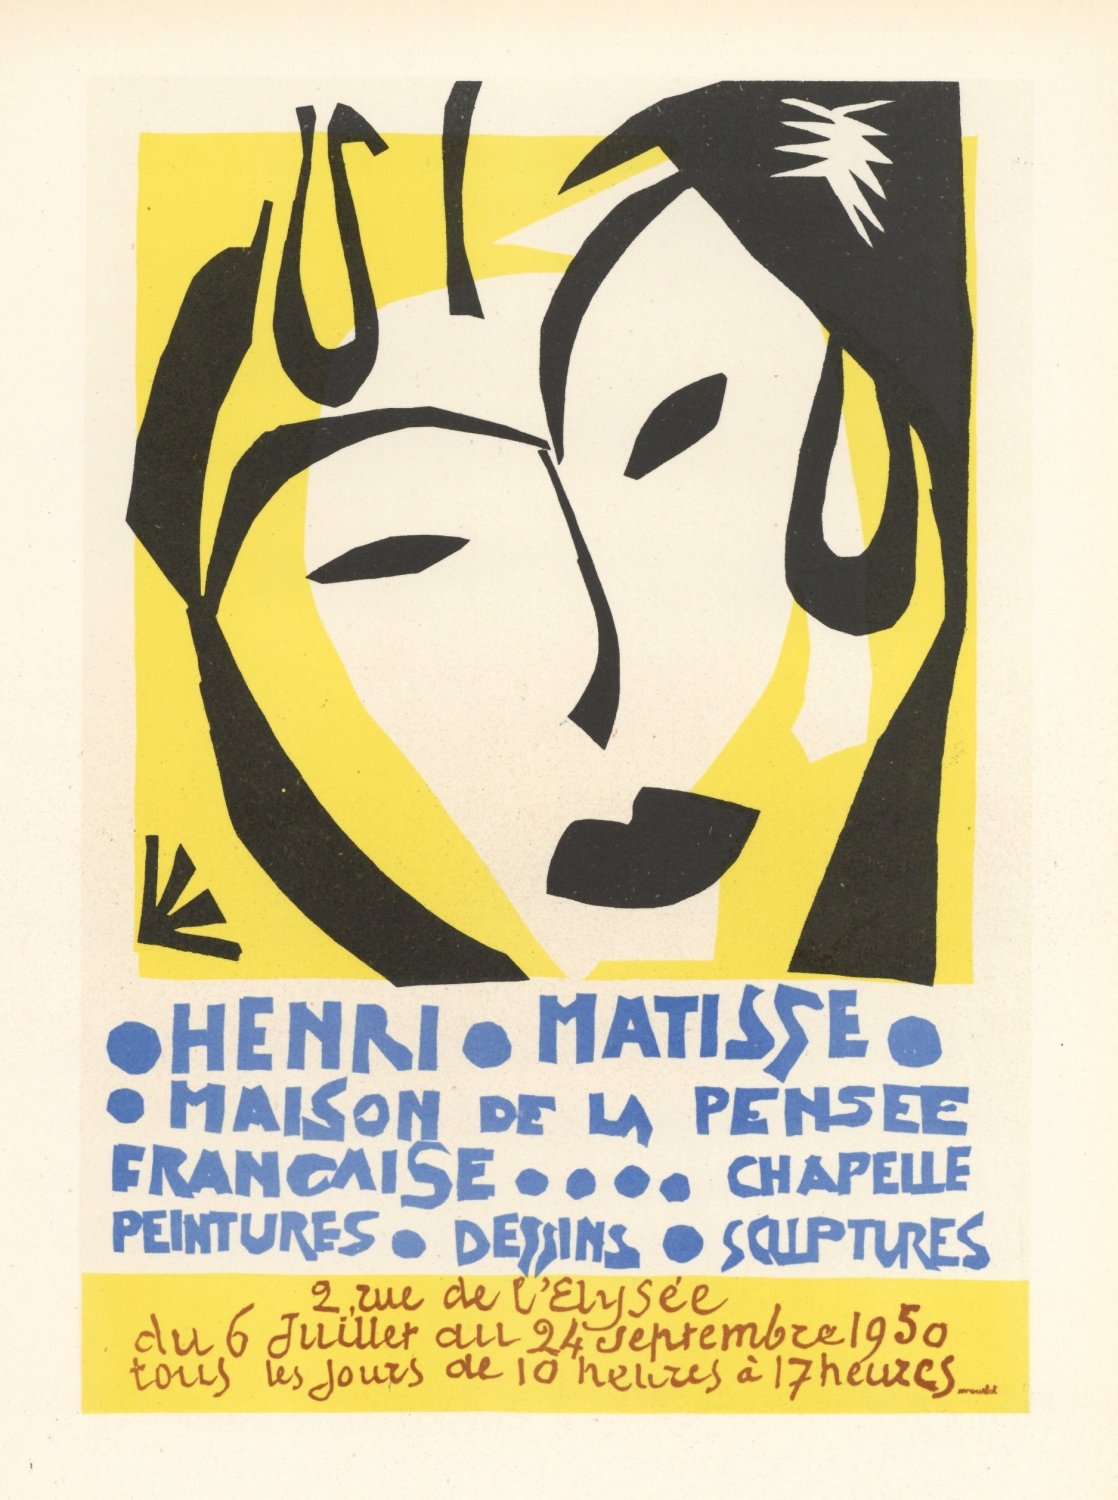 Henri Matisse Maison de la Pensee 8"x12" (20cm/30cm) Satin Photo Paper Poster